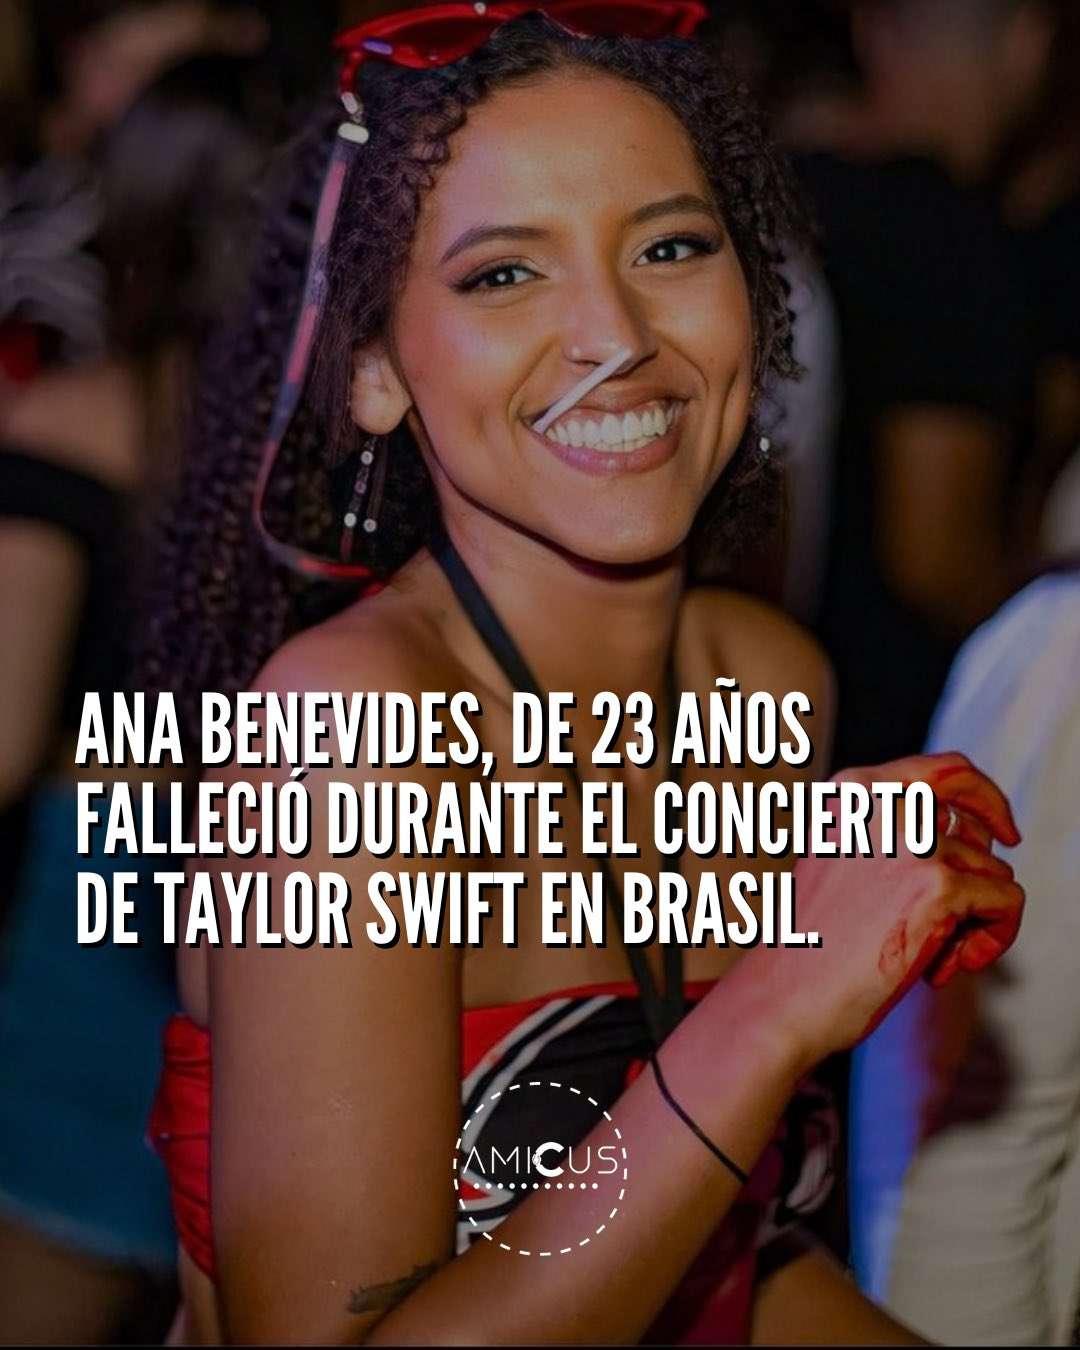 Muere fan de Taylor Swift durante concierto en Brasil por falta de agua